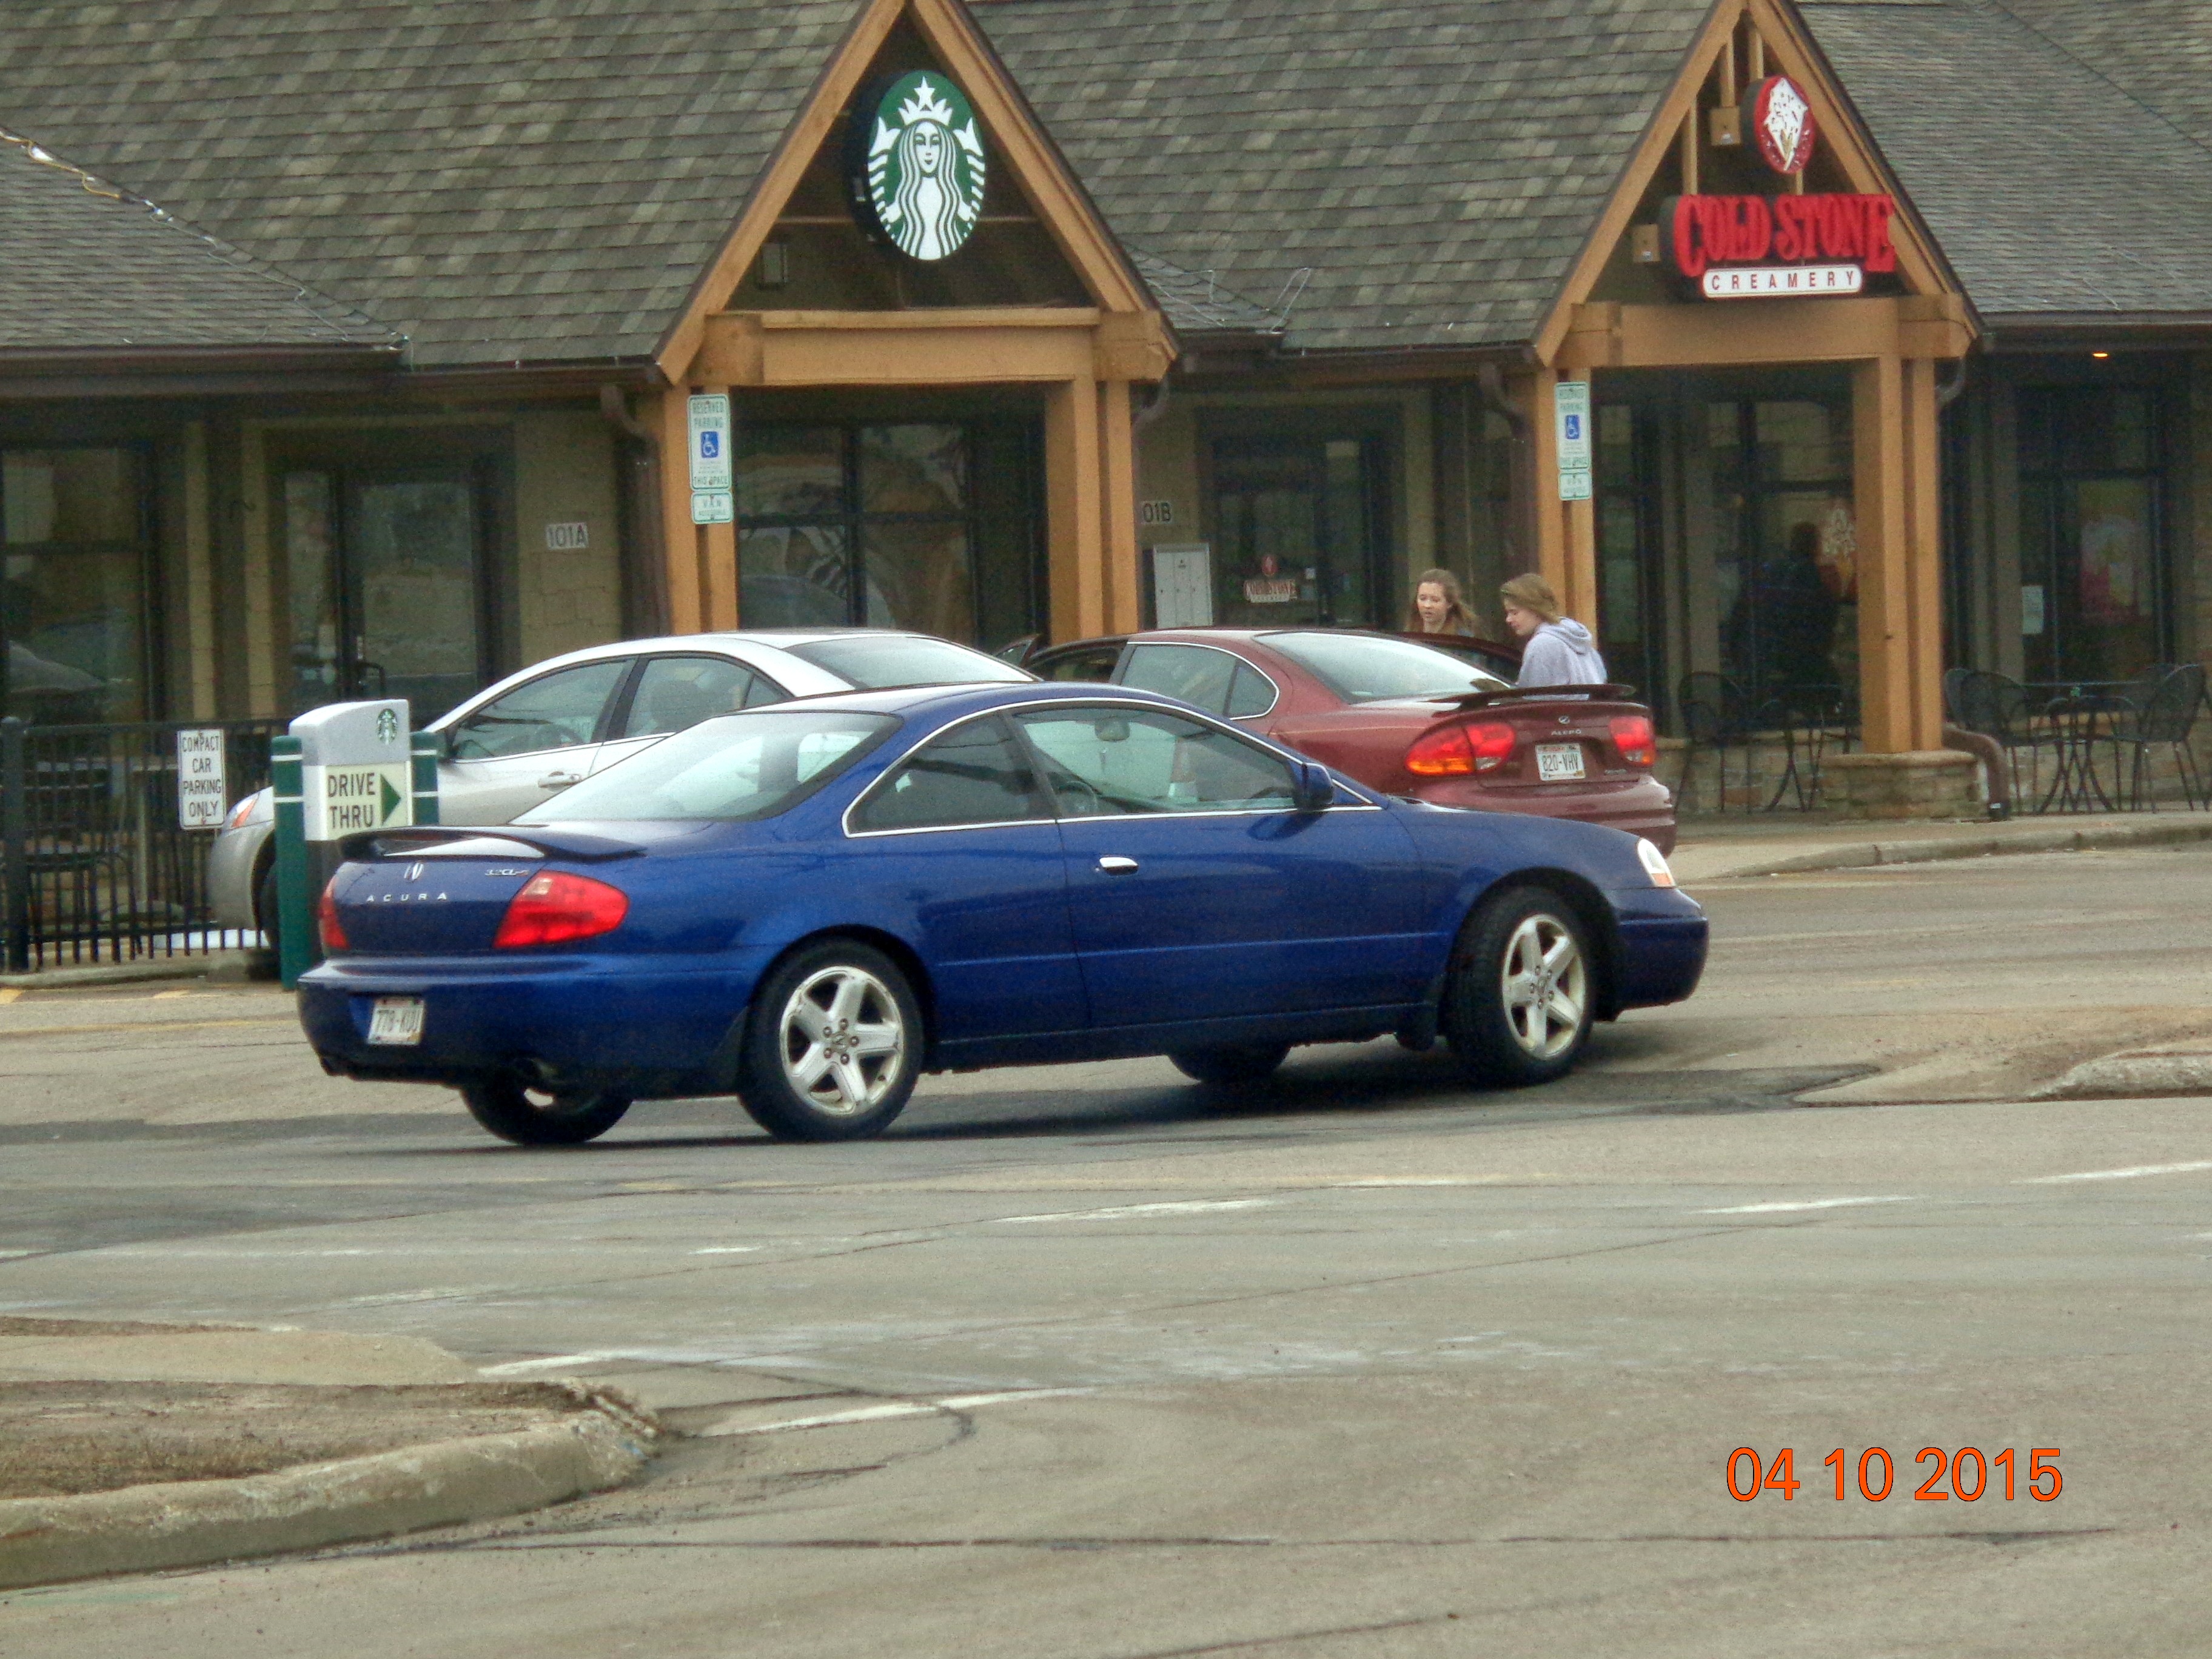 2002 Acura 3 2 CL Type S